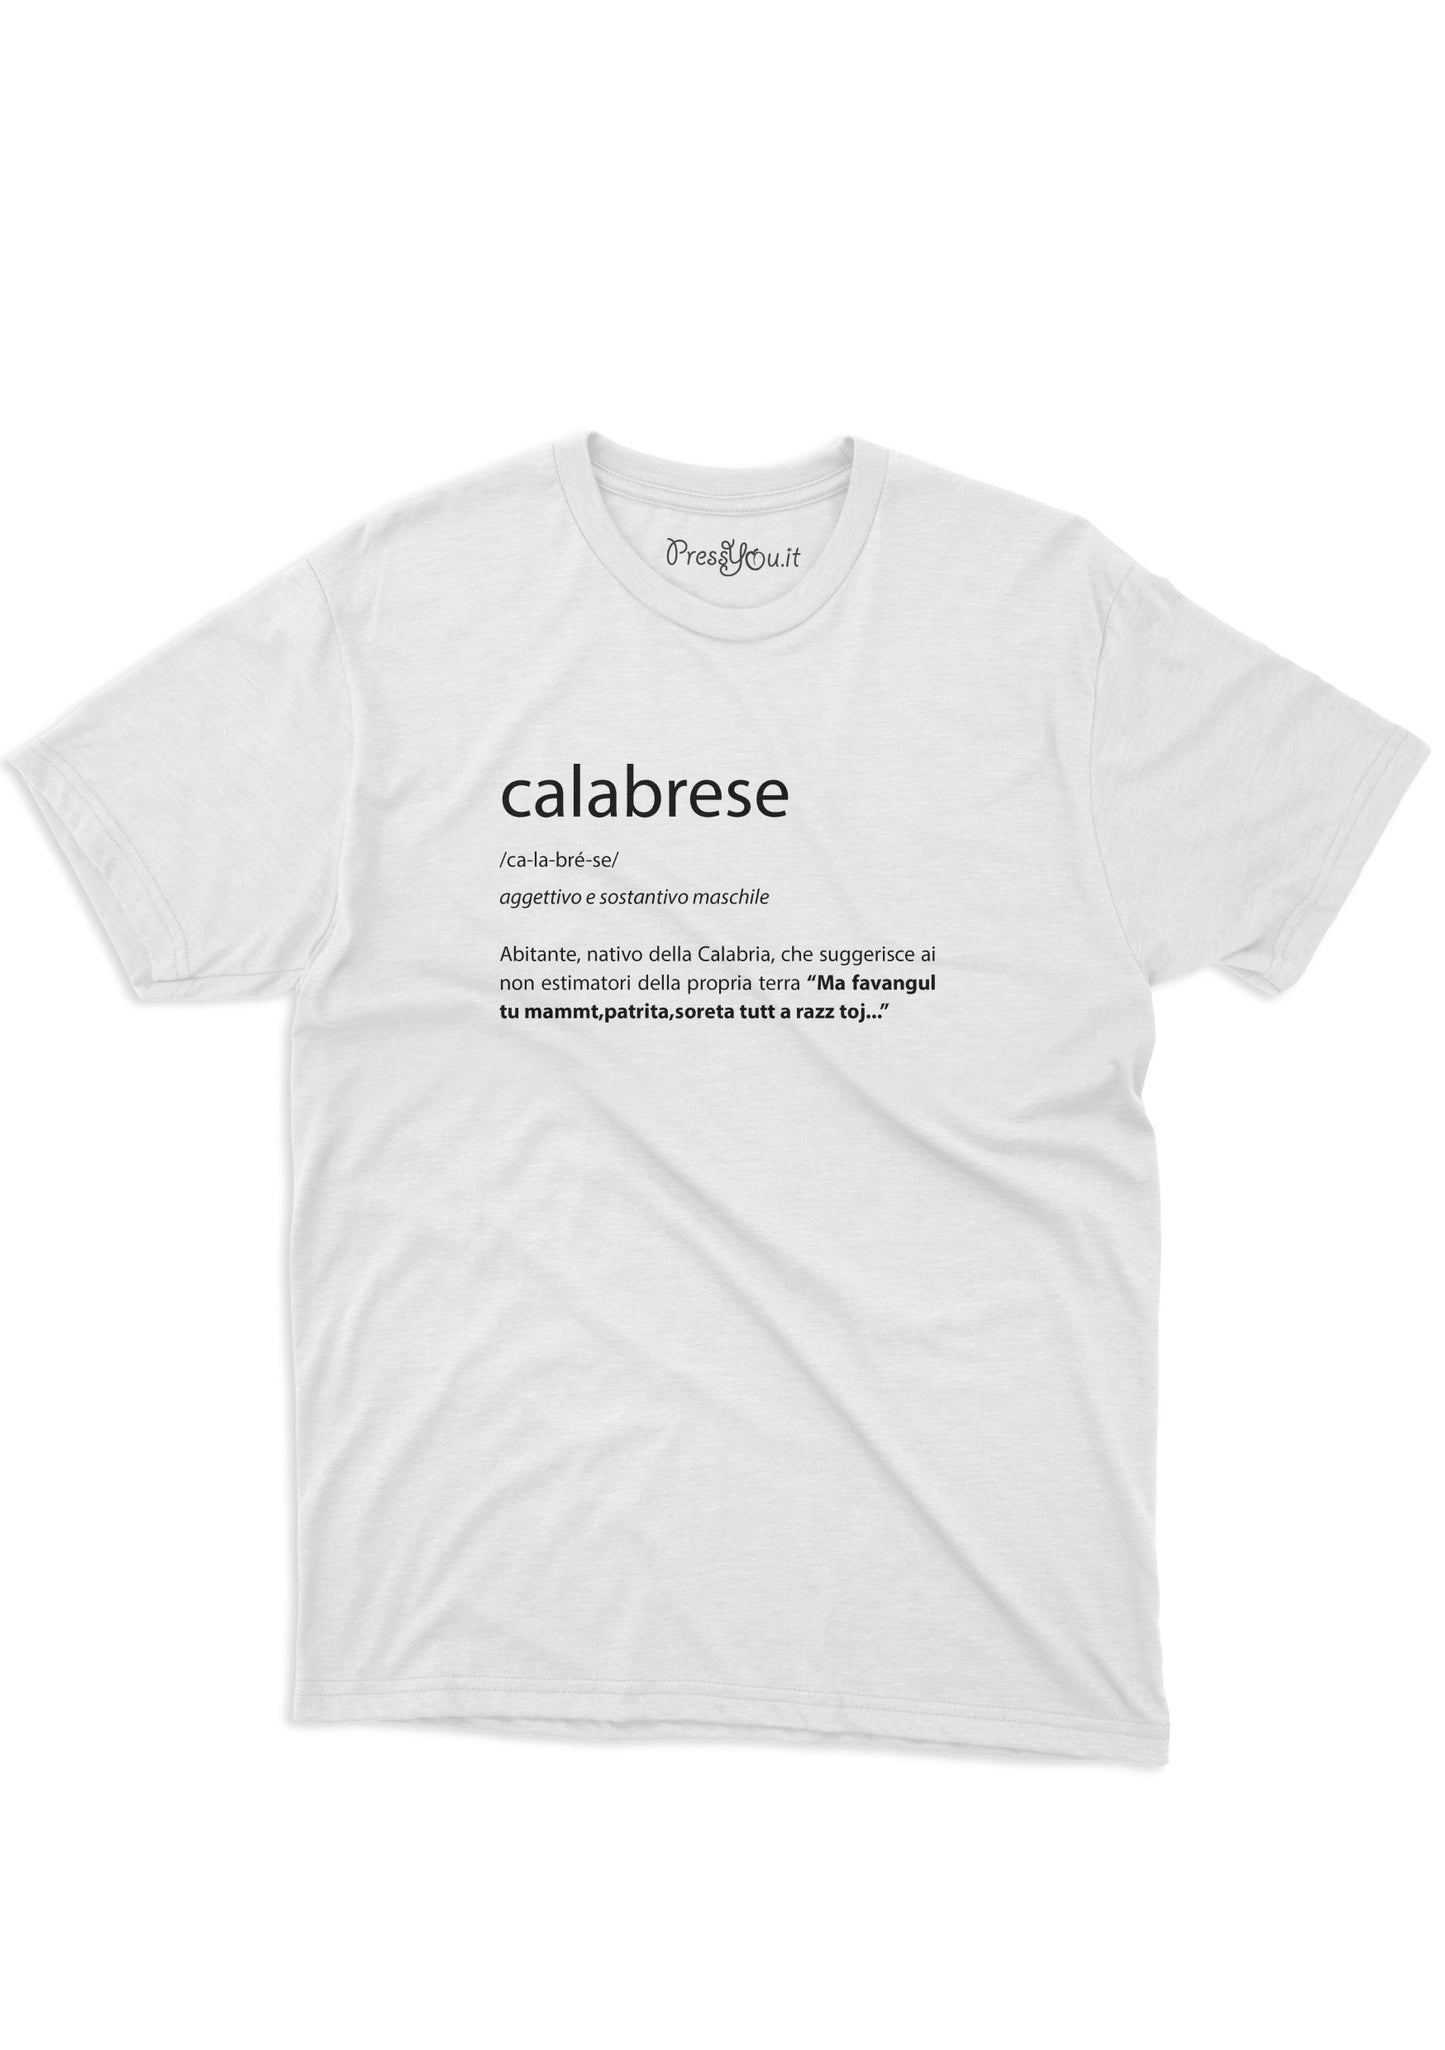 Calabrian dictionary t-shirt native inhabitant of Calabria